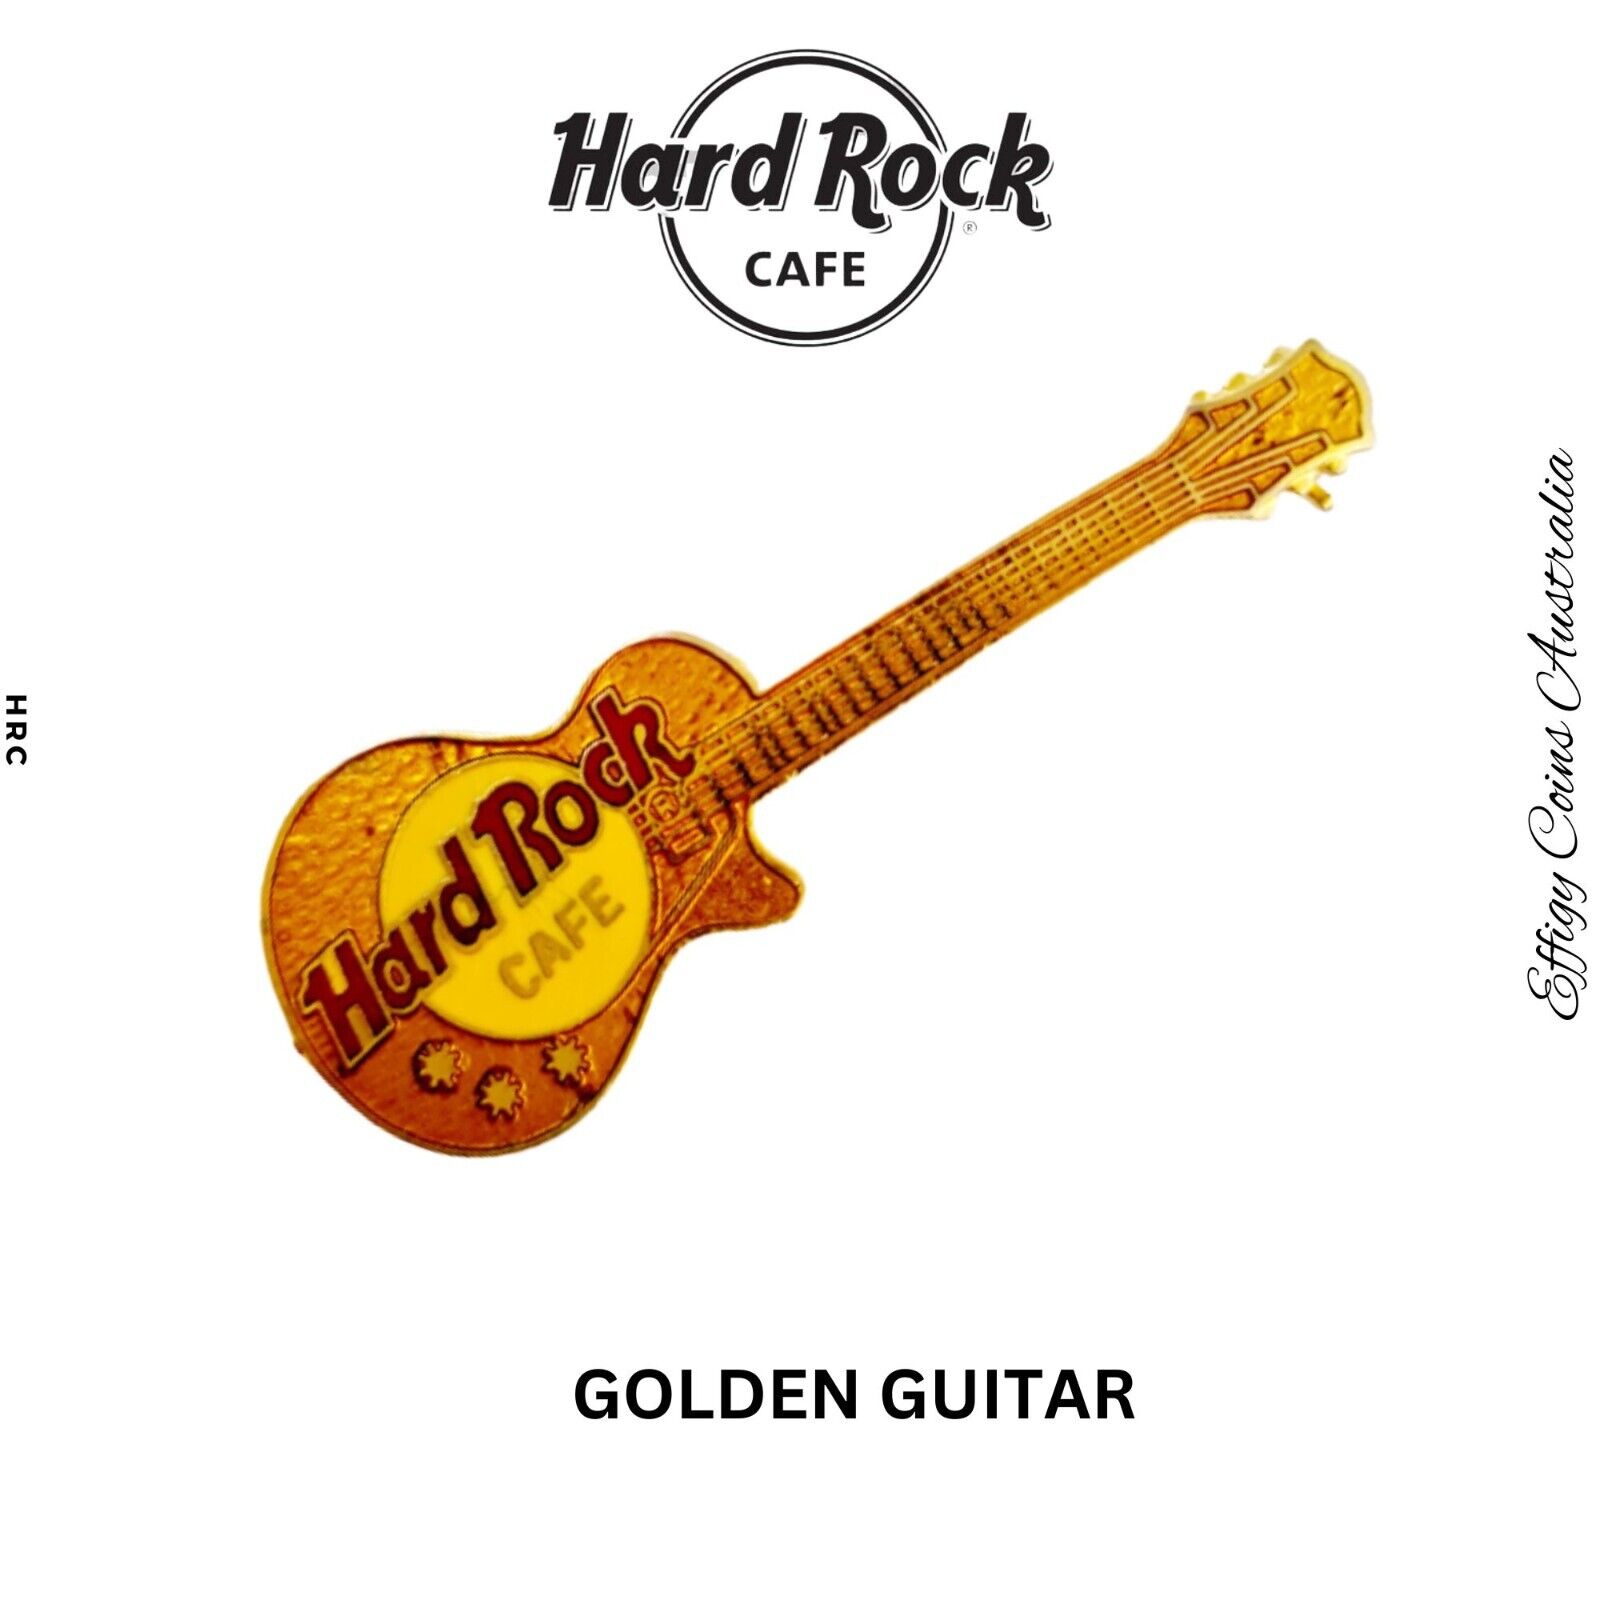 Hard Rock Cafe Pin HRC Golden Guitar Music Pin Collectible Metal Clasp/Pin Rare